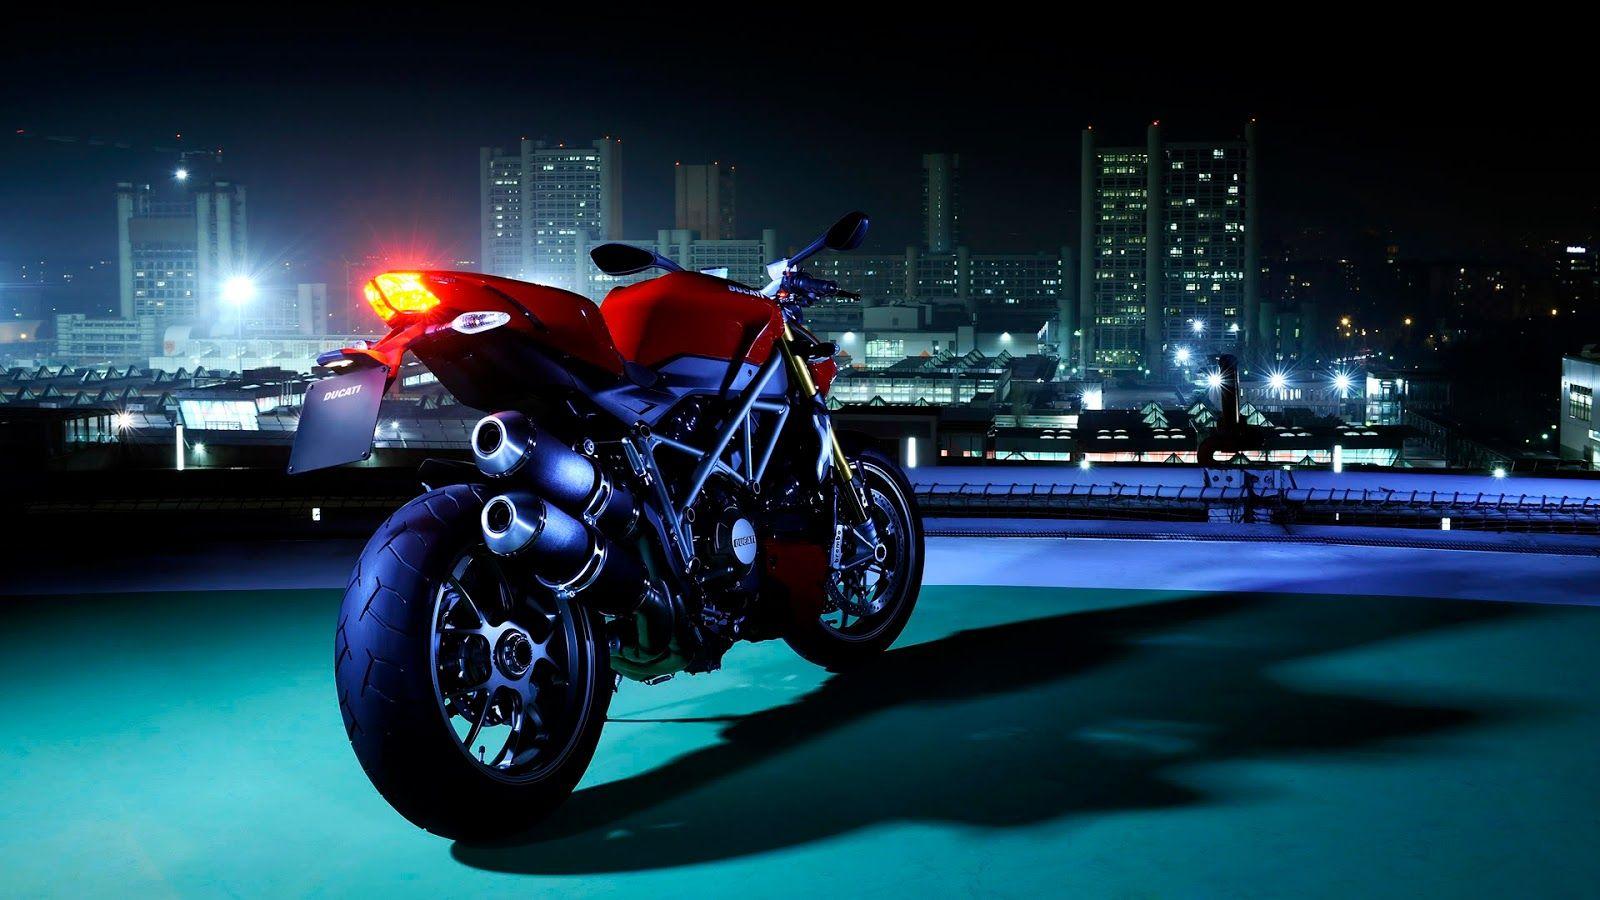 Ducati Bikes Wallpapers - Top Free Ducati Bikes ...